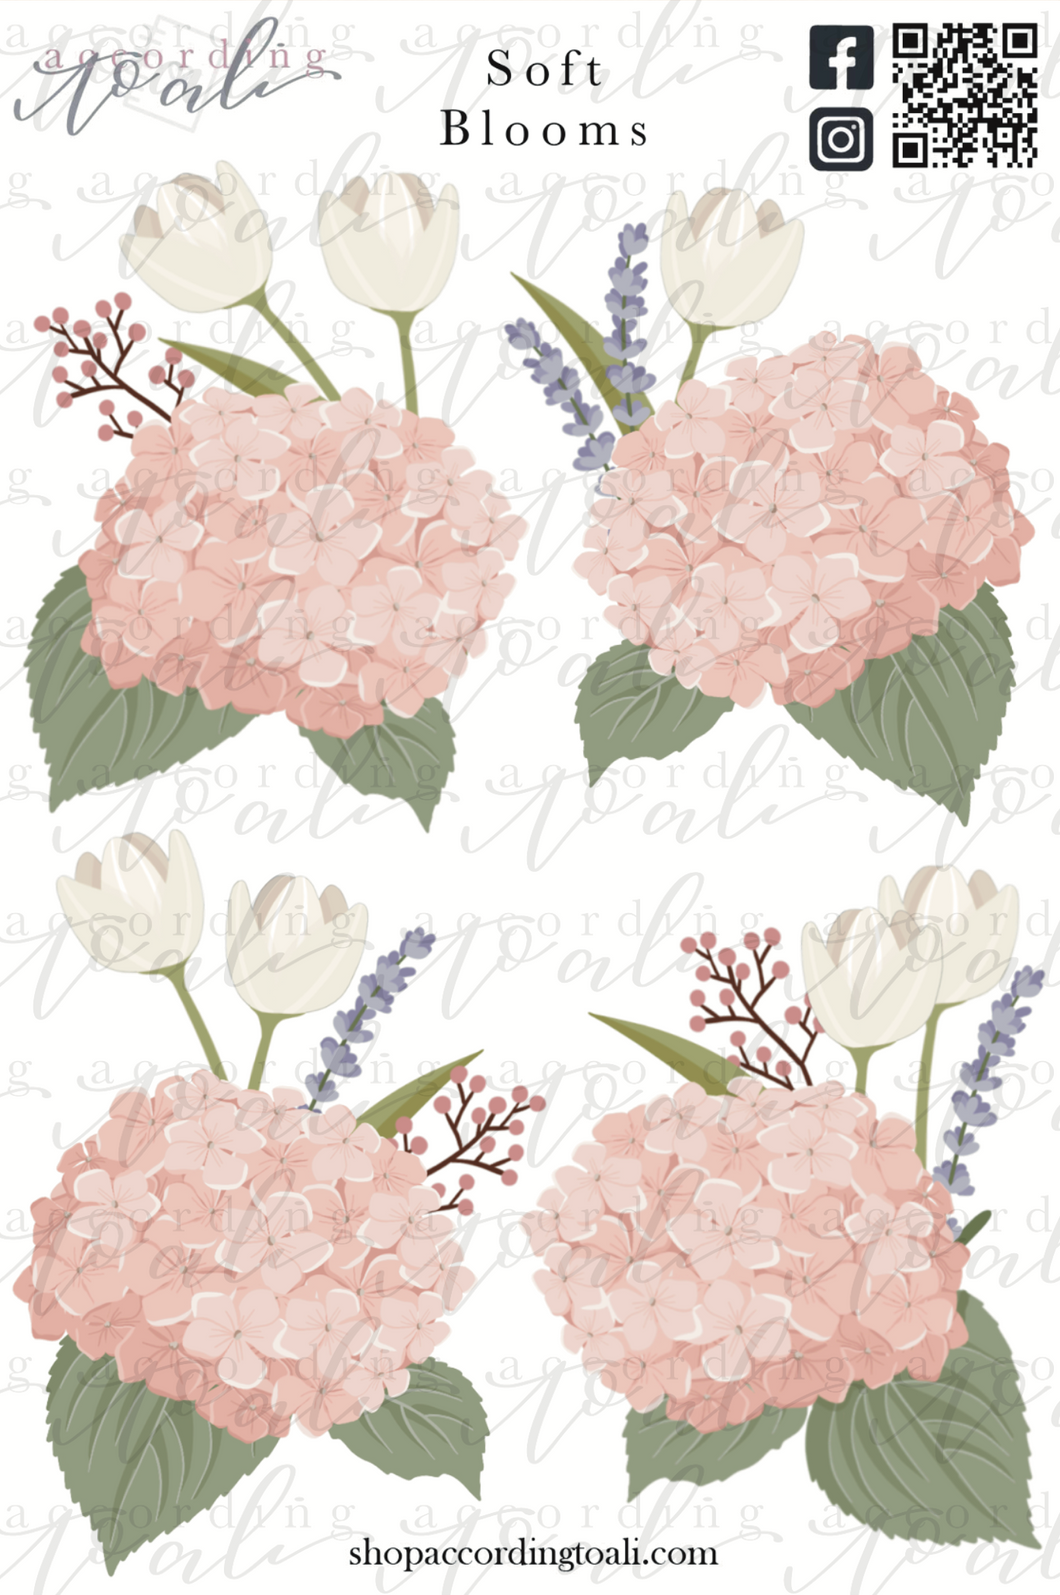 Soft Blooms Sticker Sheet